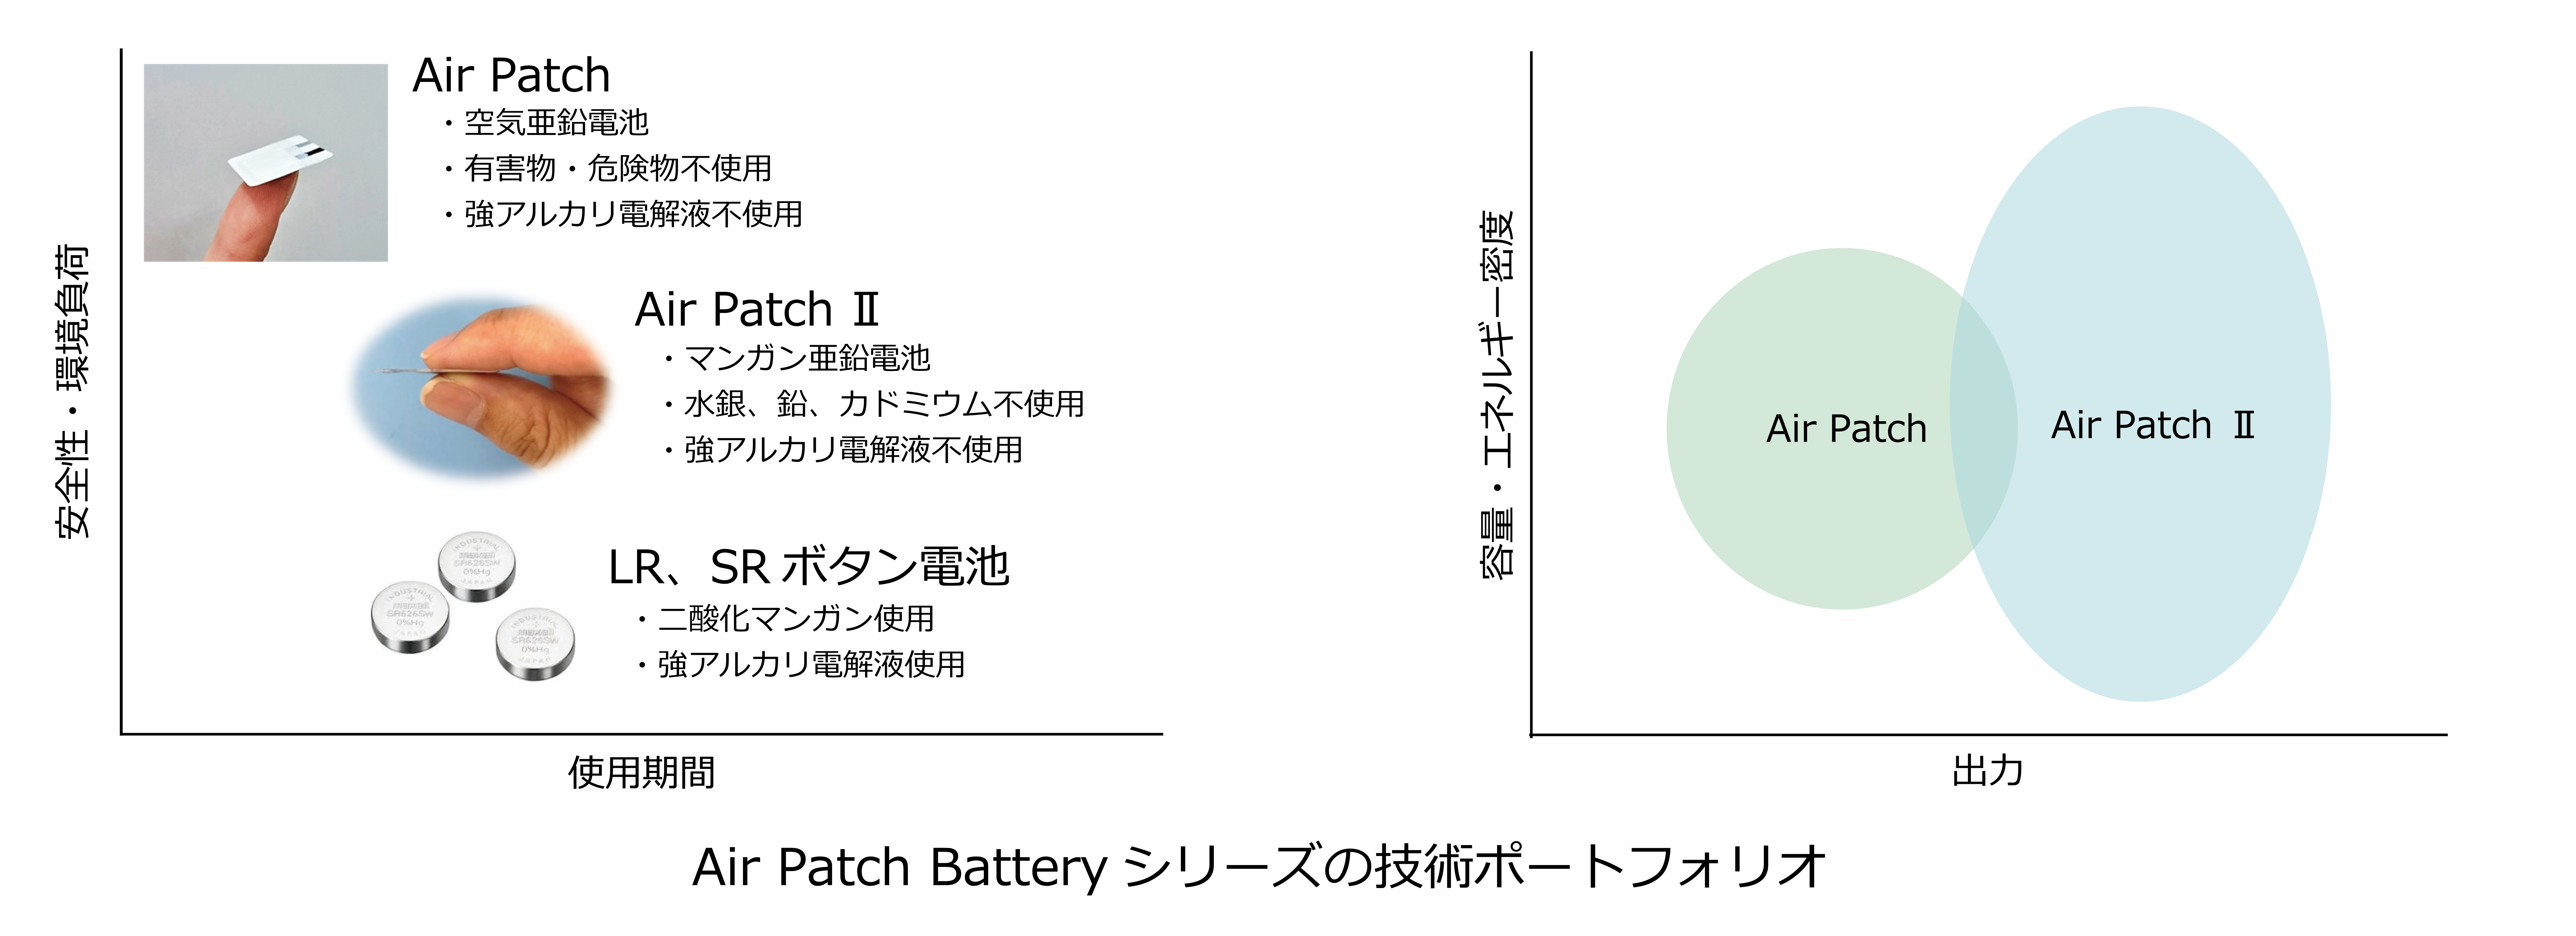 薄形フレキシブル電池 Air Patch Battery 技術ポートフォリオ